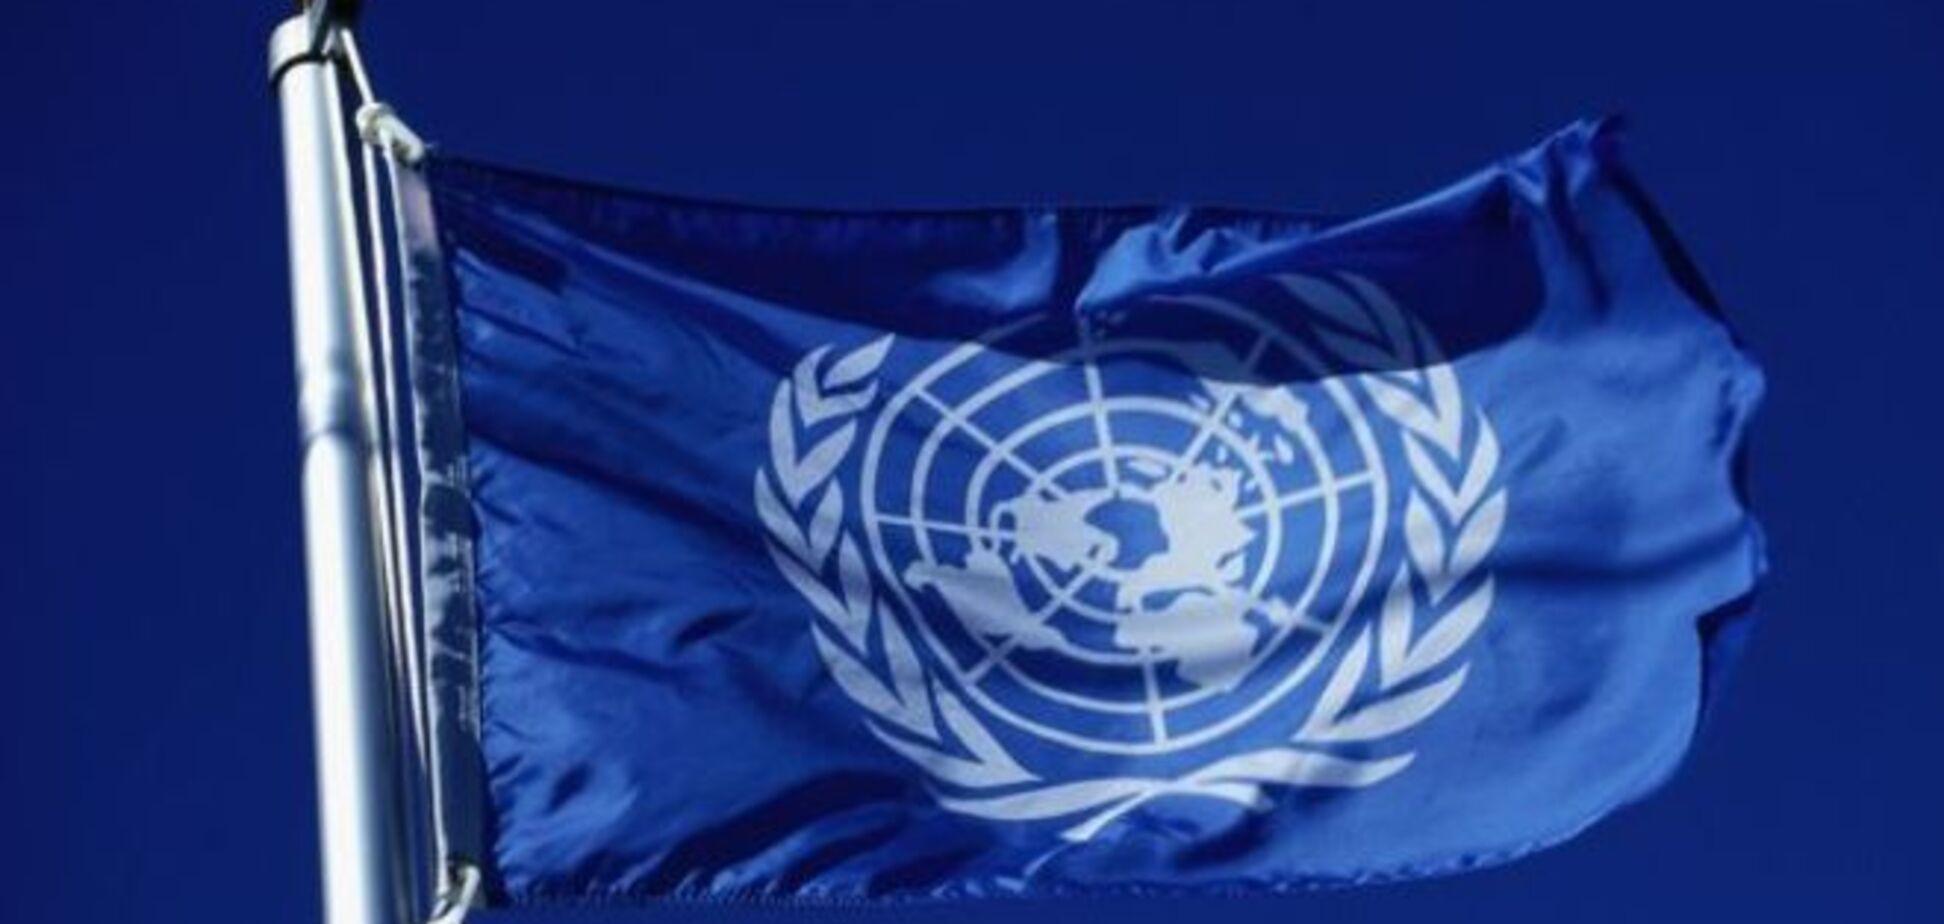 ООН фіксує масові порушення прав людини на Донбасі та в Криму, а також присутність військових РФ